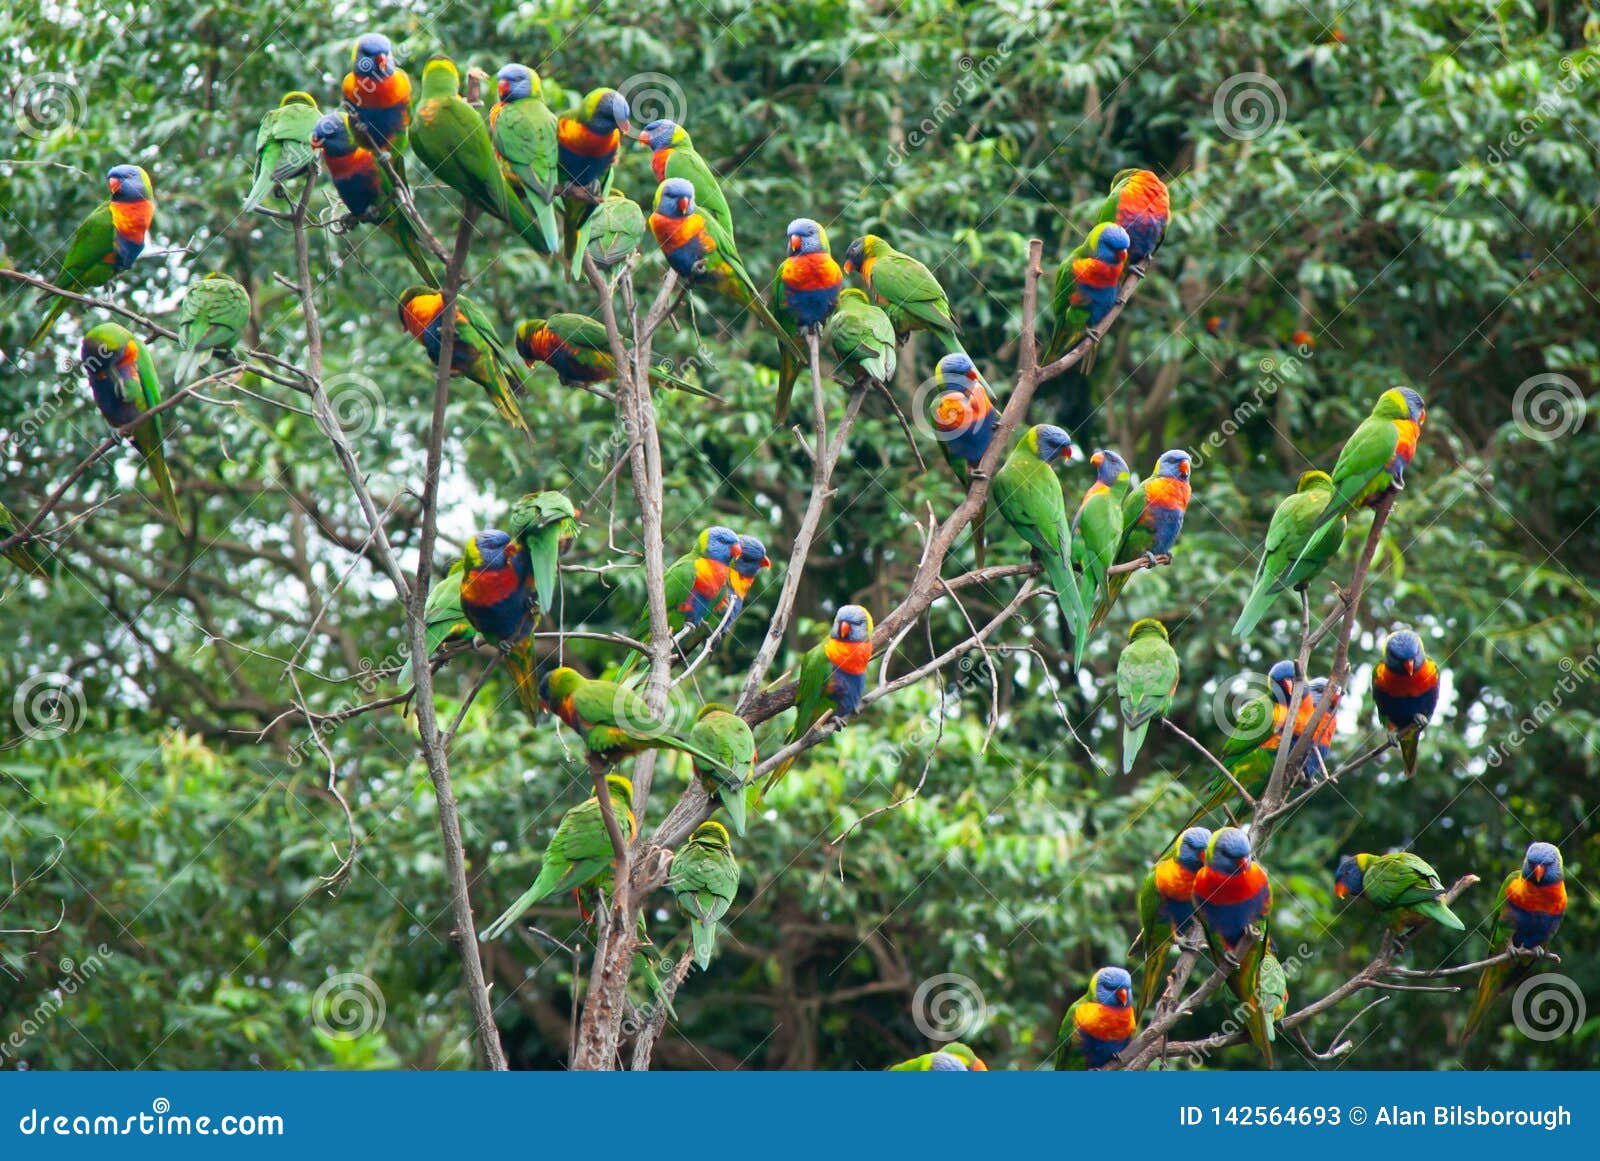 a flock of rainbow lorikeets